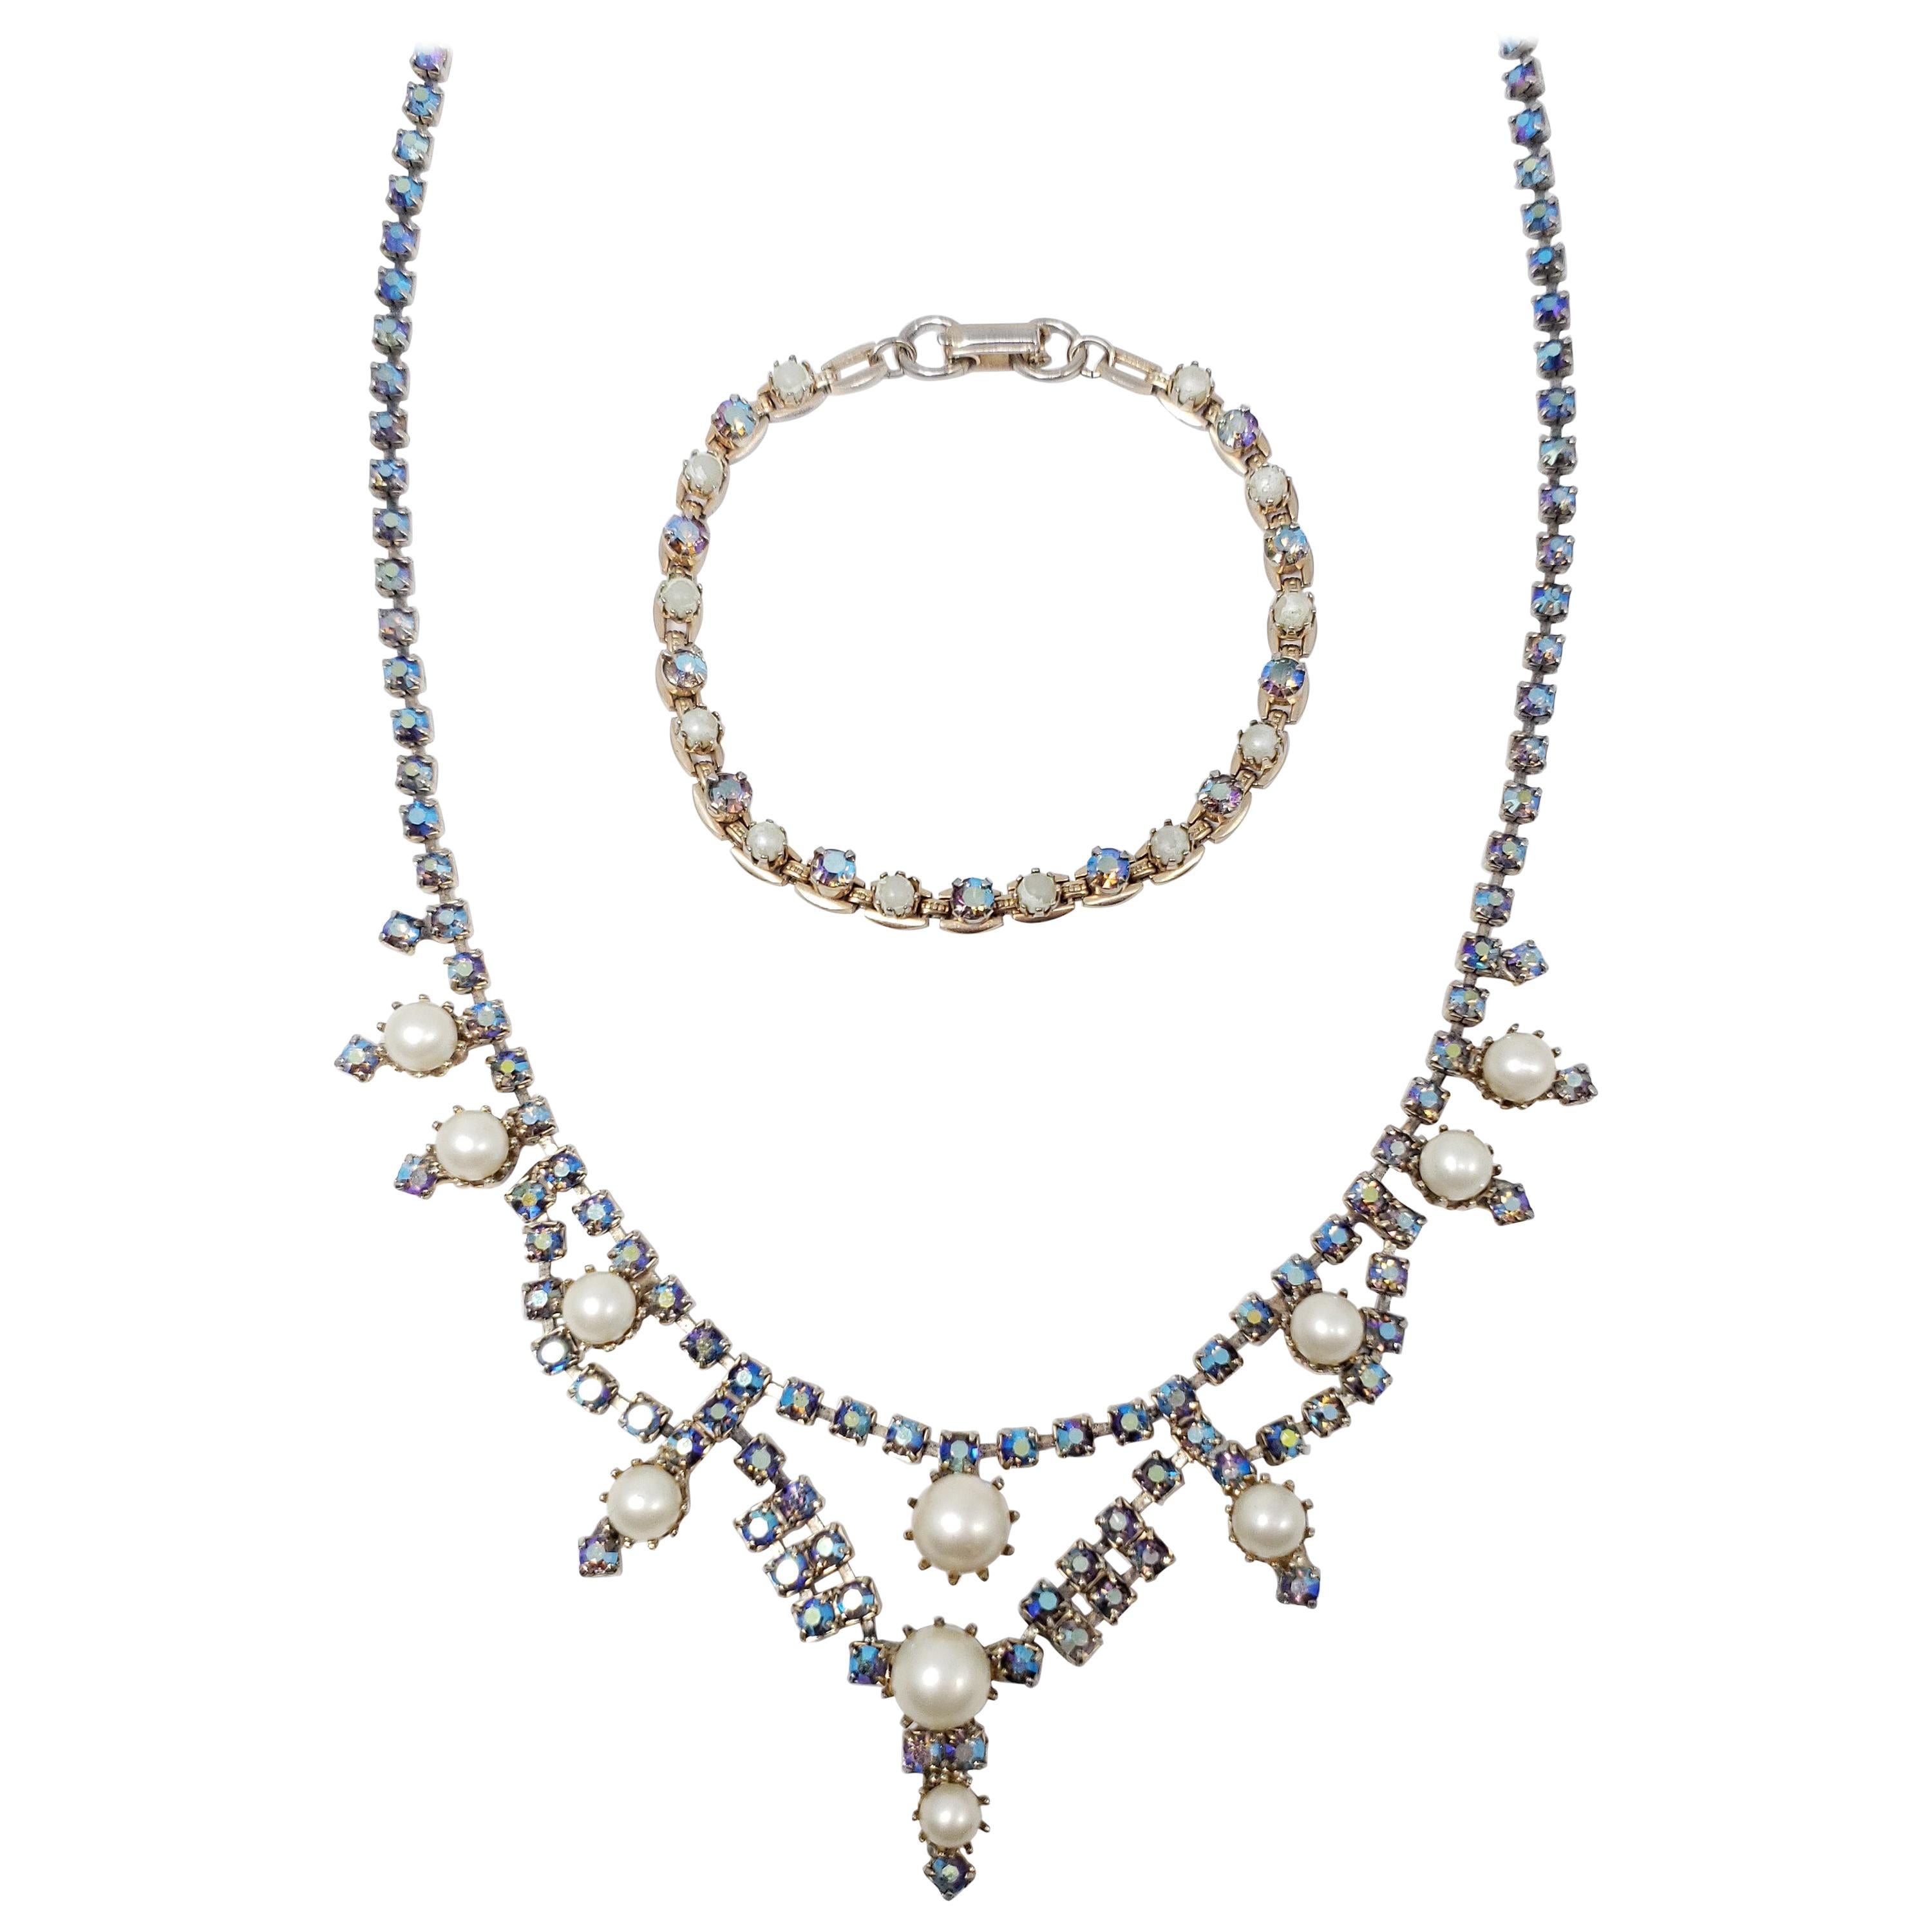 Halskette und Armband aus Aurora Borealis-Kristall und Kunstperlen mit erlesenen Saphiren, 1950er Jahre